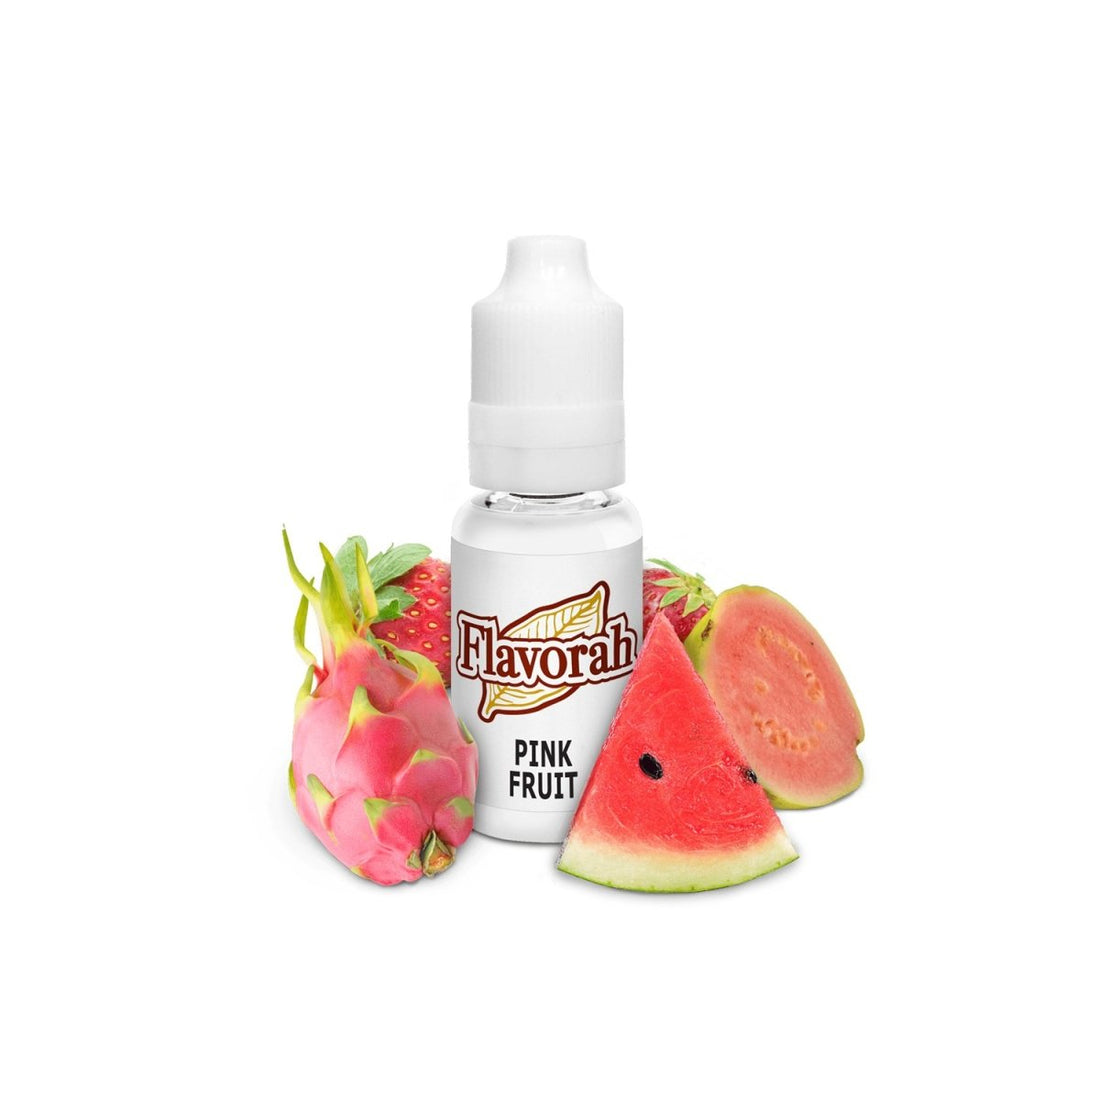 Pink Fruit FLV - Aroma - Flavorah | AR-FLV-PF